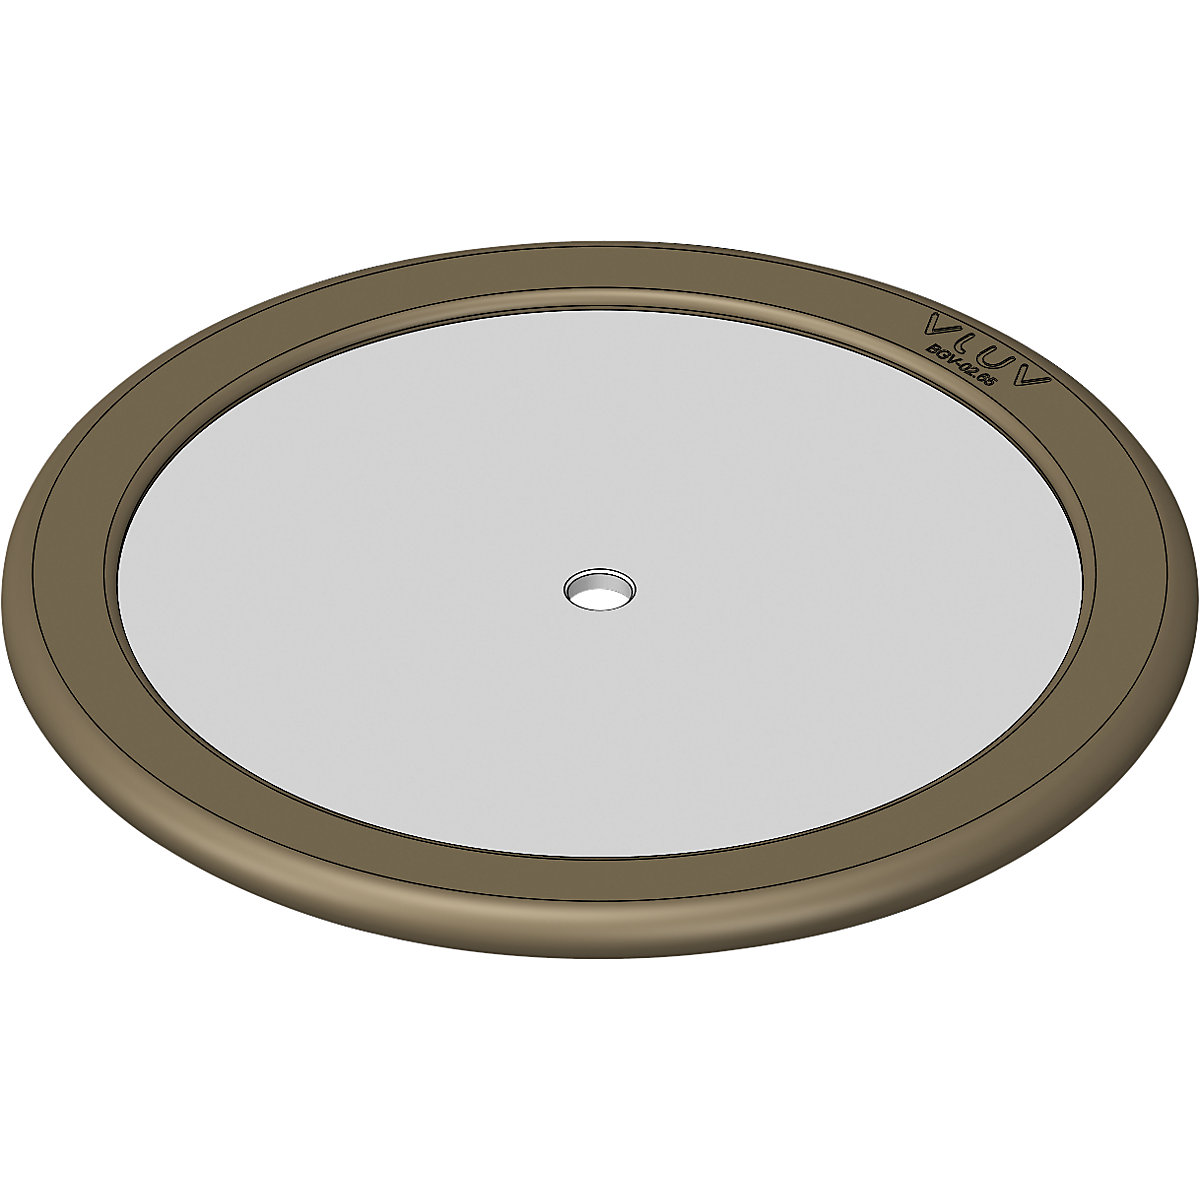 Peso stabilizzante per fitball UPP2, per la stabilizzazione, per diametro palla 60 – 65 cm-2